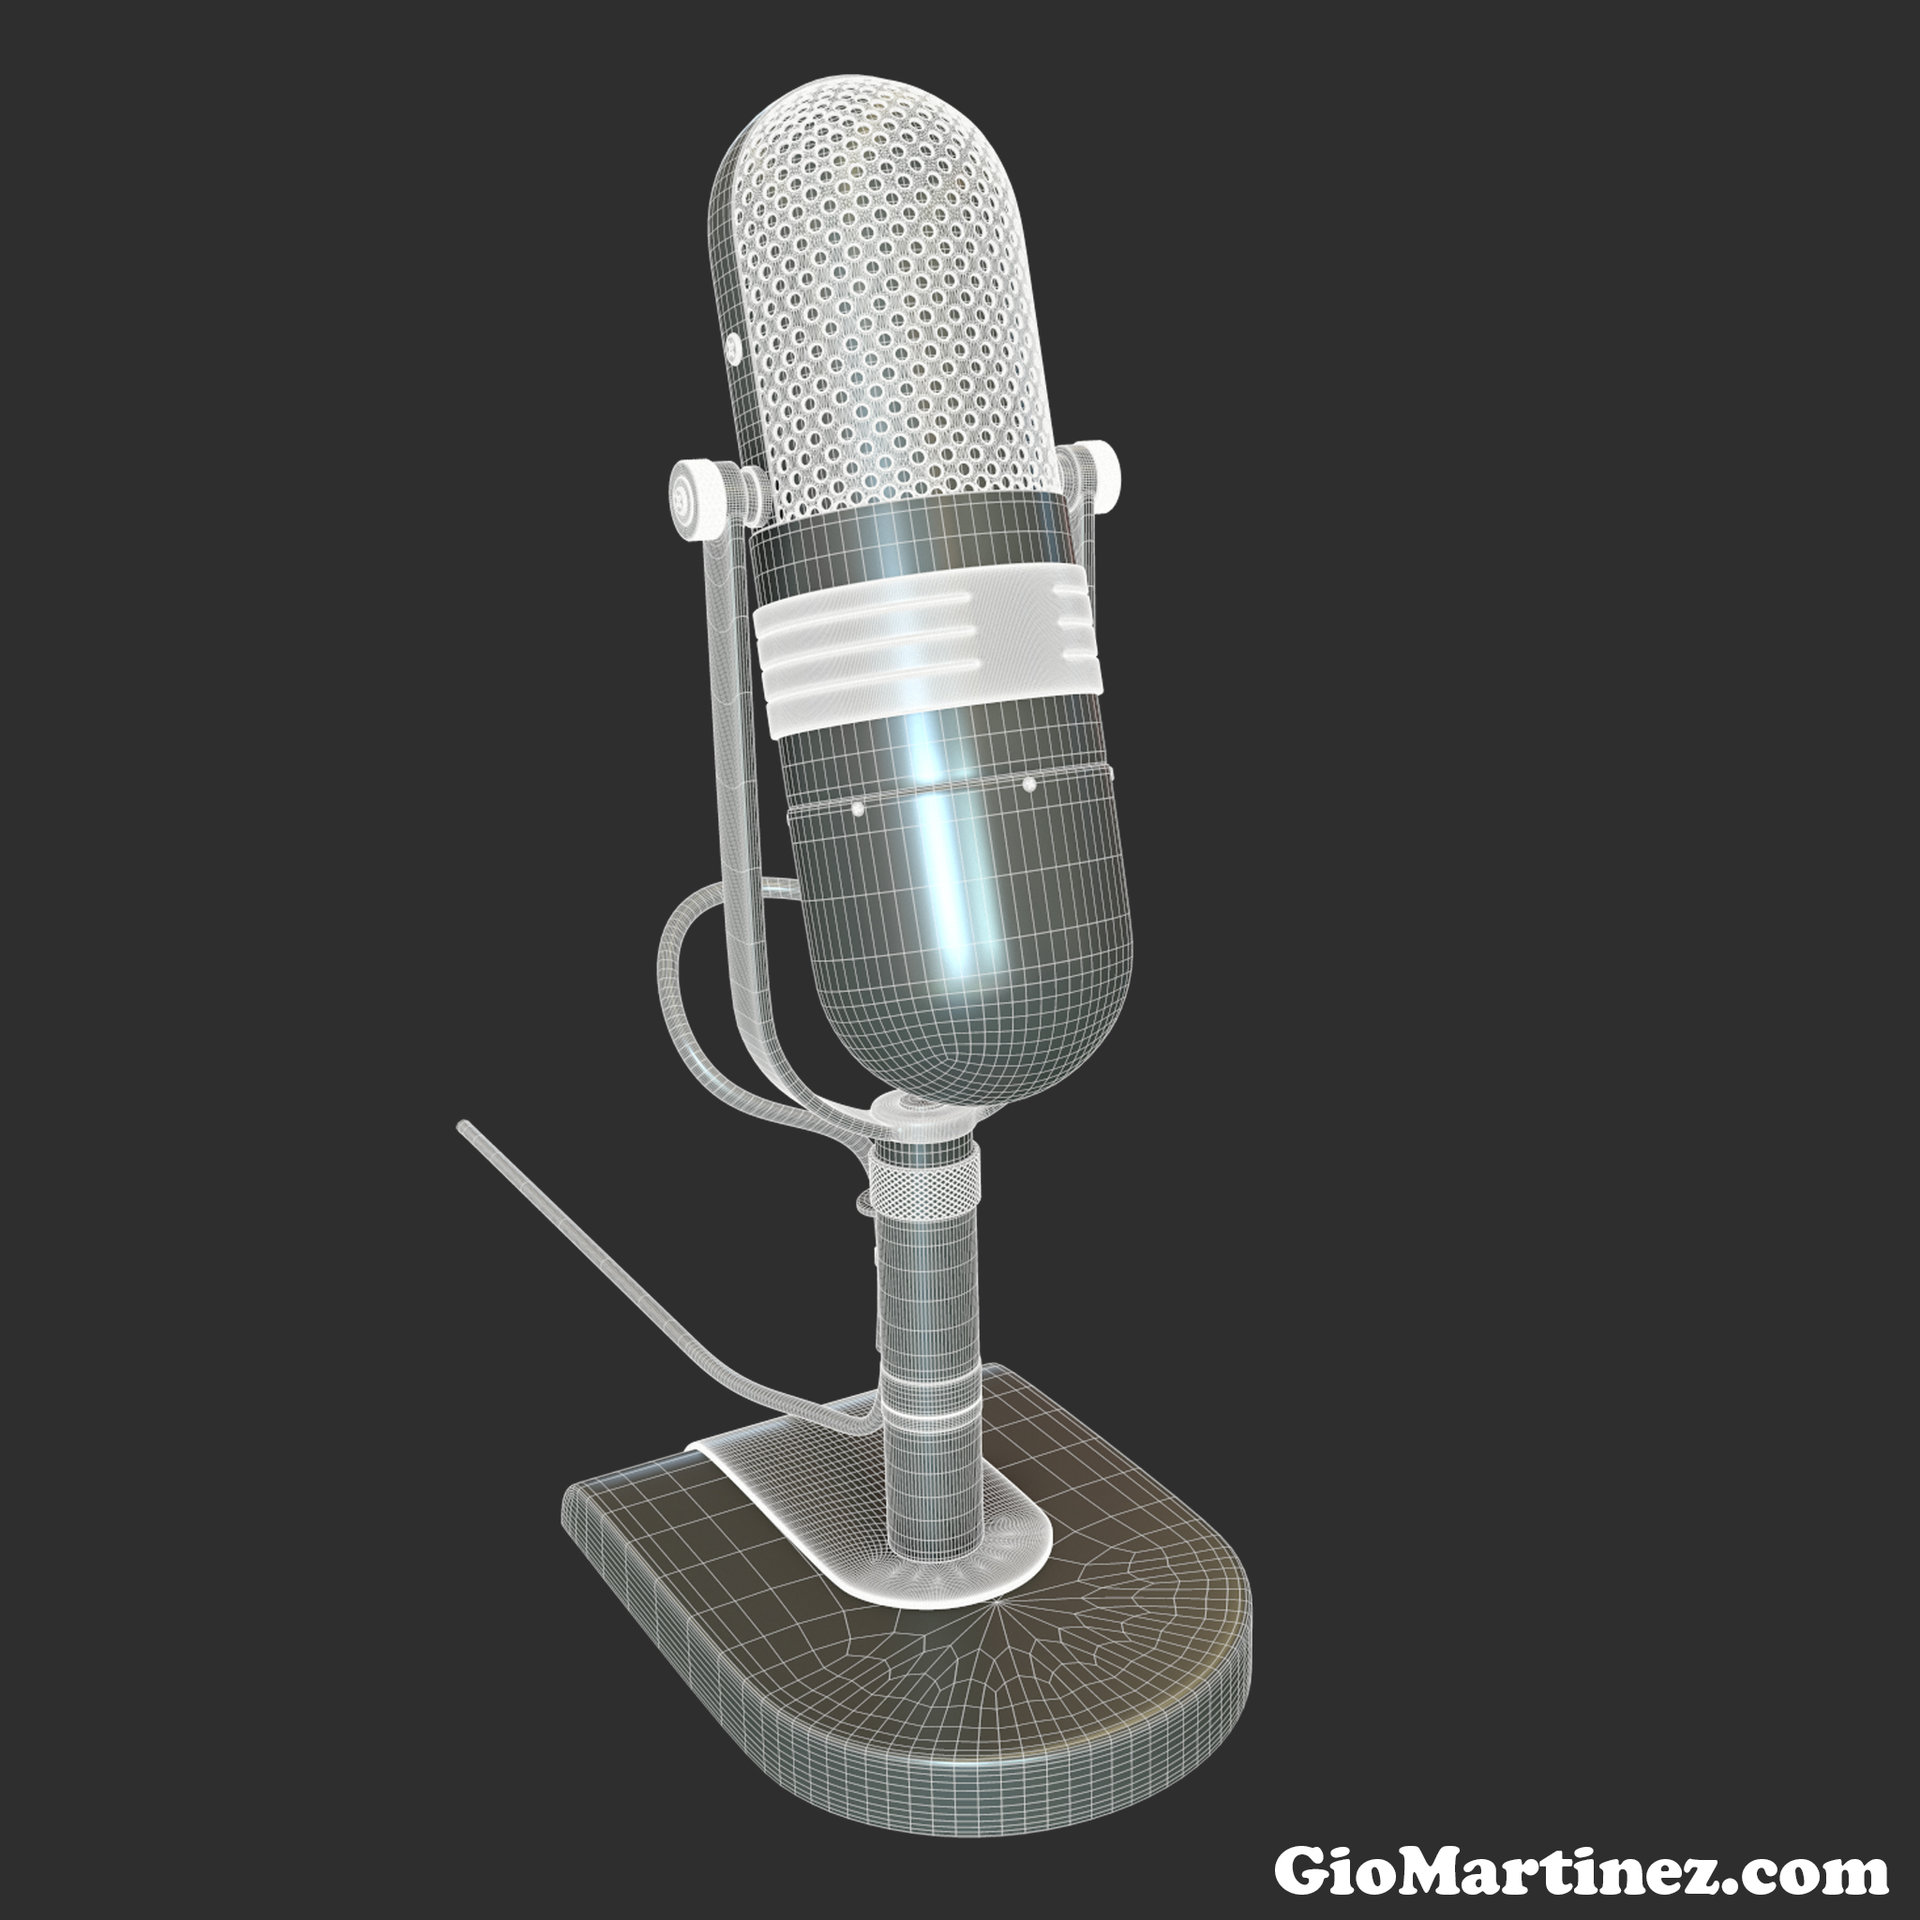 giovanni-martinez-radio-mic-final-high-rez-wireframe.jpg?1431045190